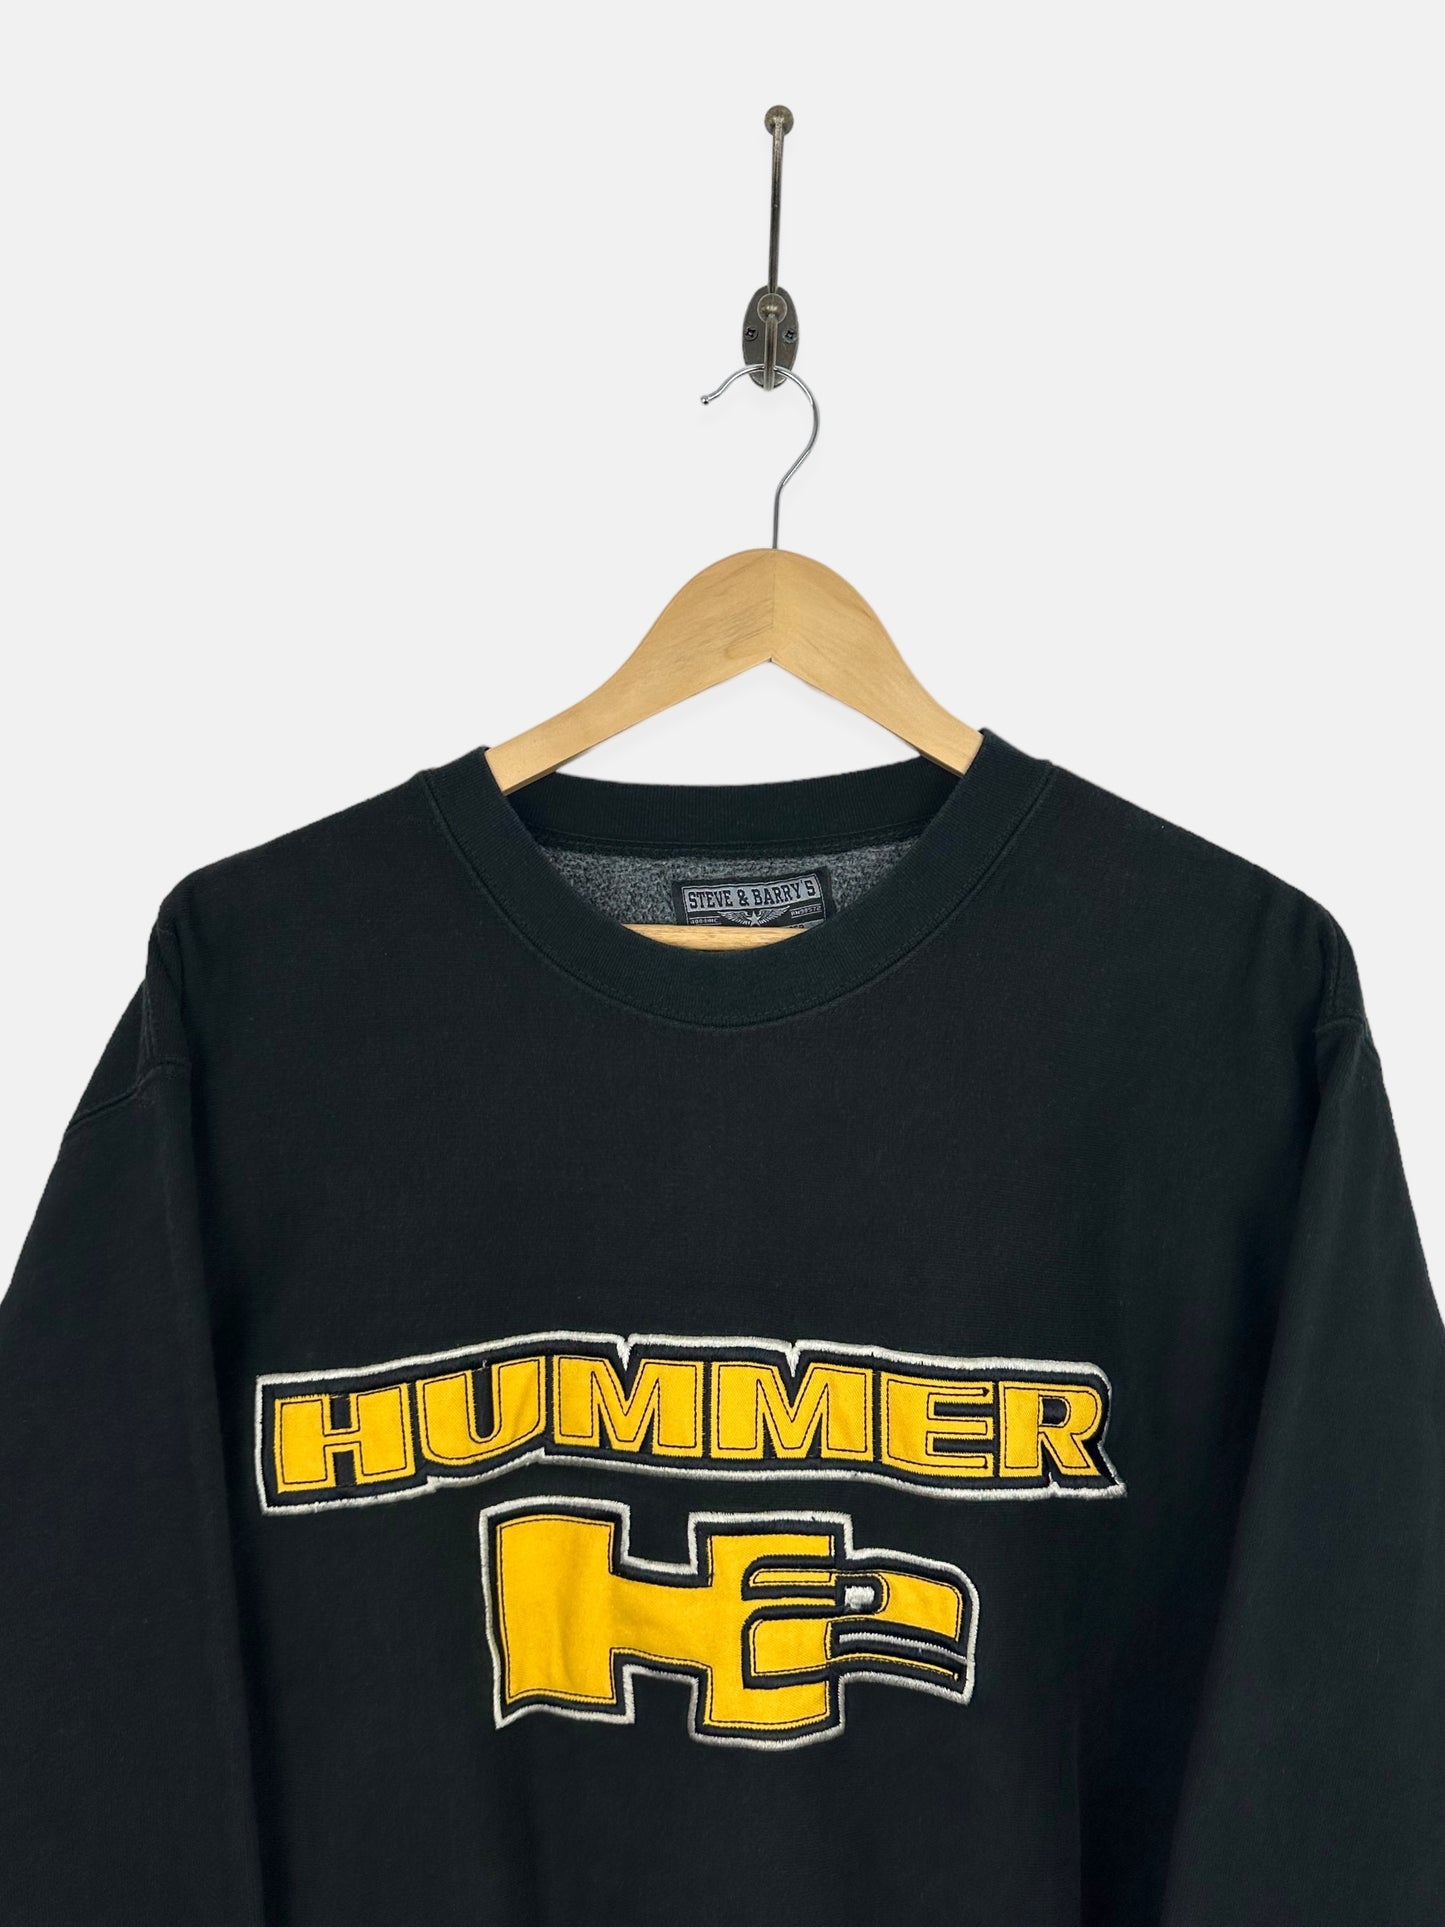 90's Hummer Embroidered Vintage Sweatshirt Size M-L